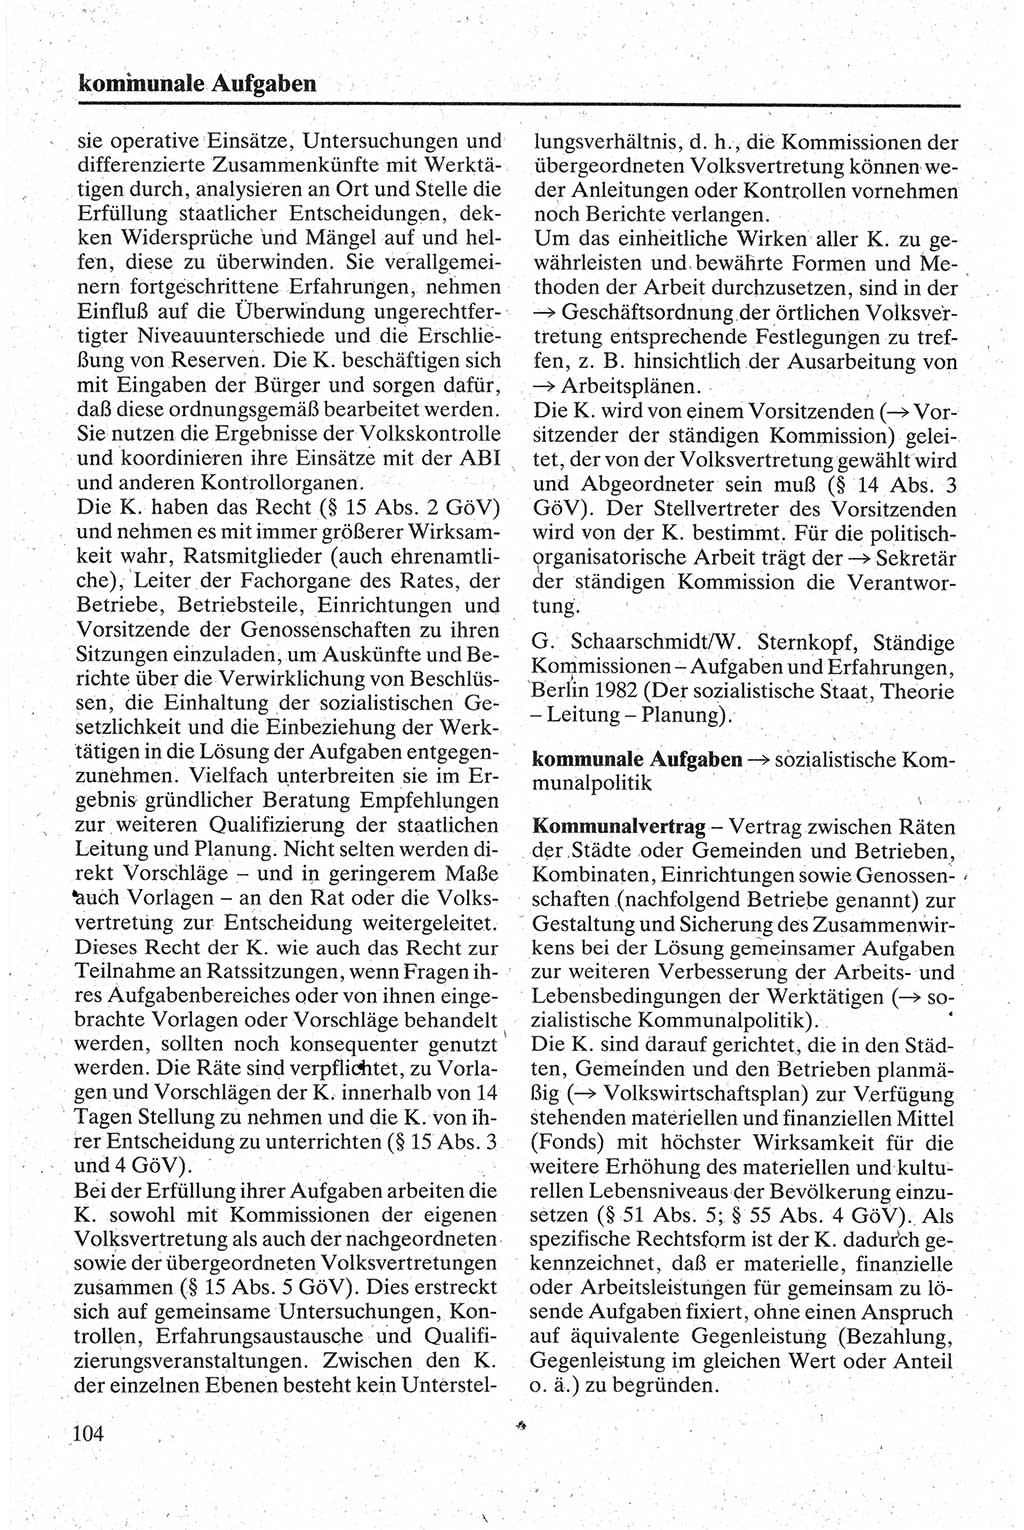 Handbuch für den Abgeordneten [Deutsche Demokratische Republik (DDR)] 1984, Seite 104 (Hb. Abg. DDR 1984, S. 104)